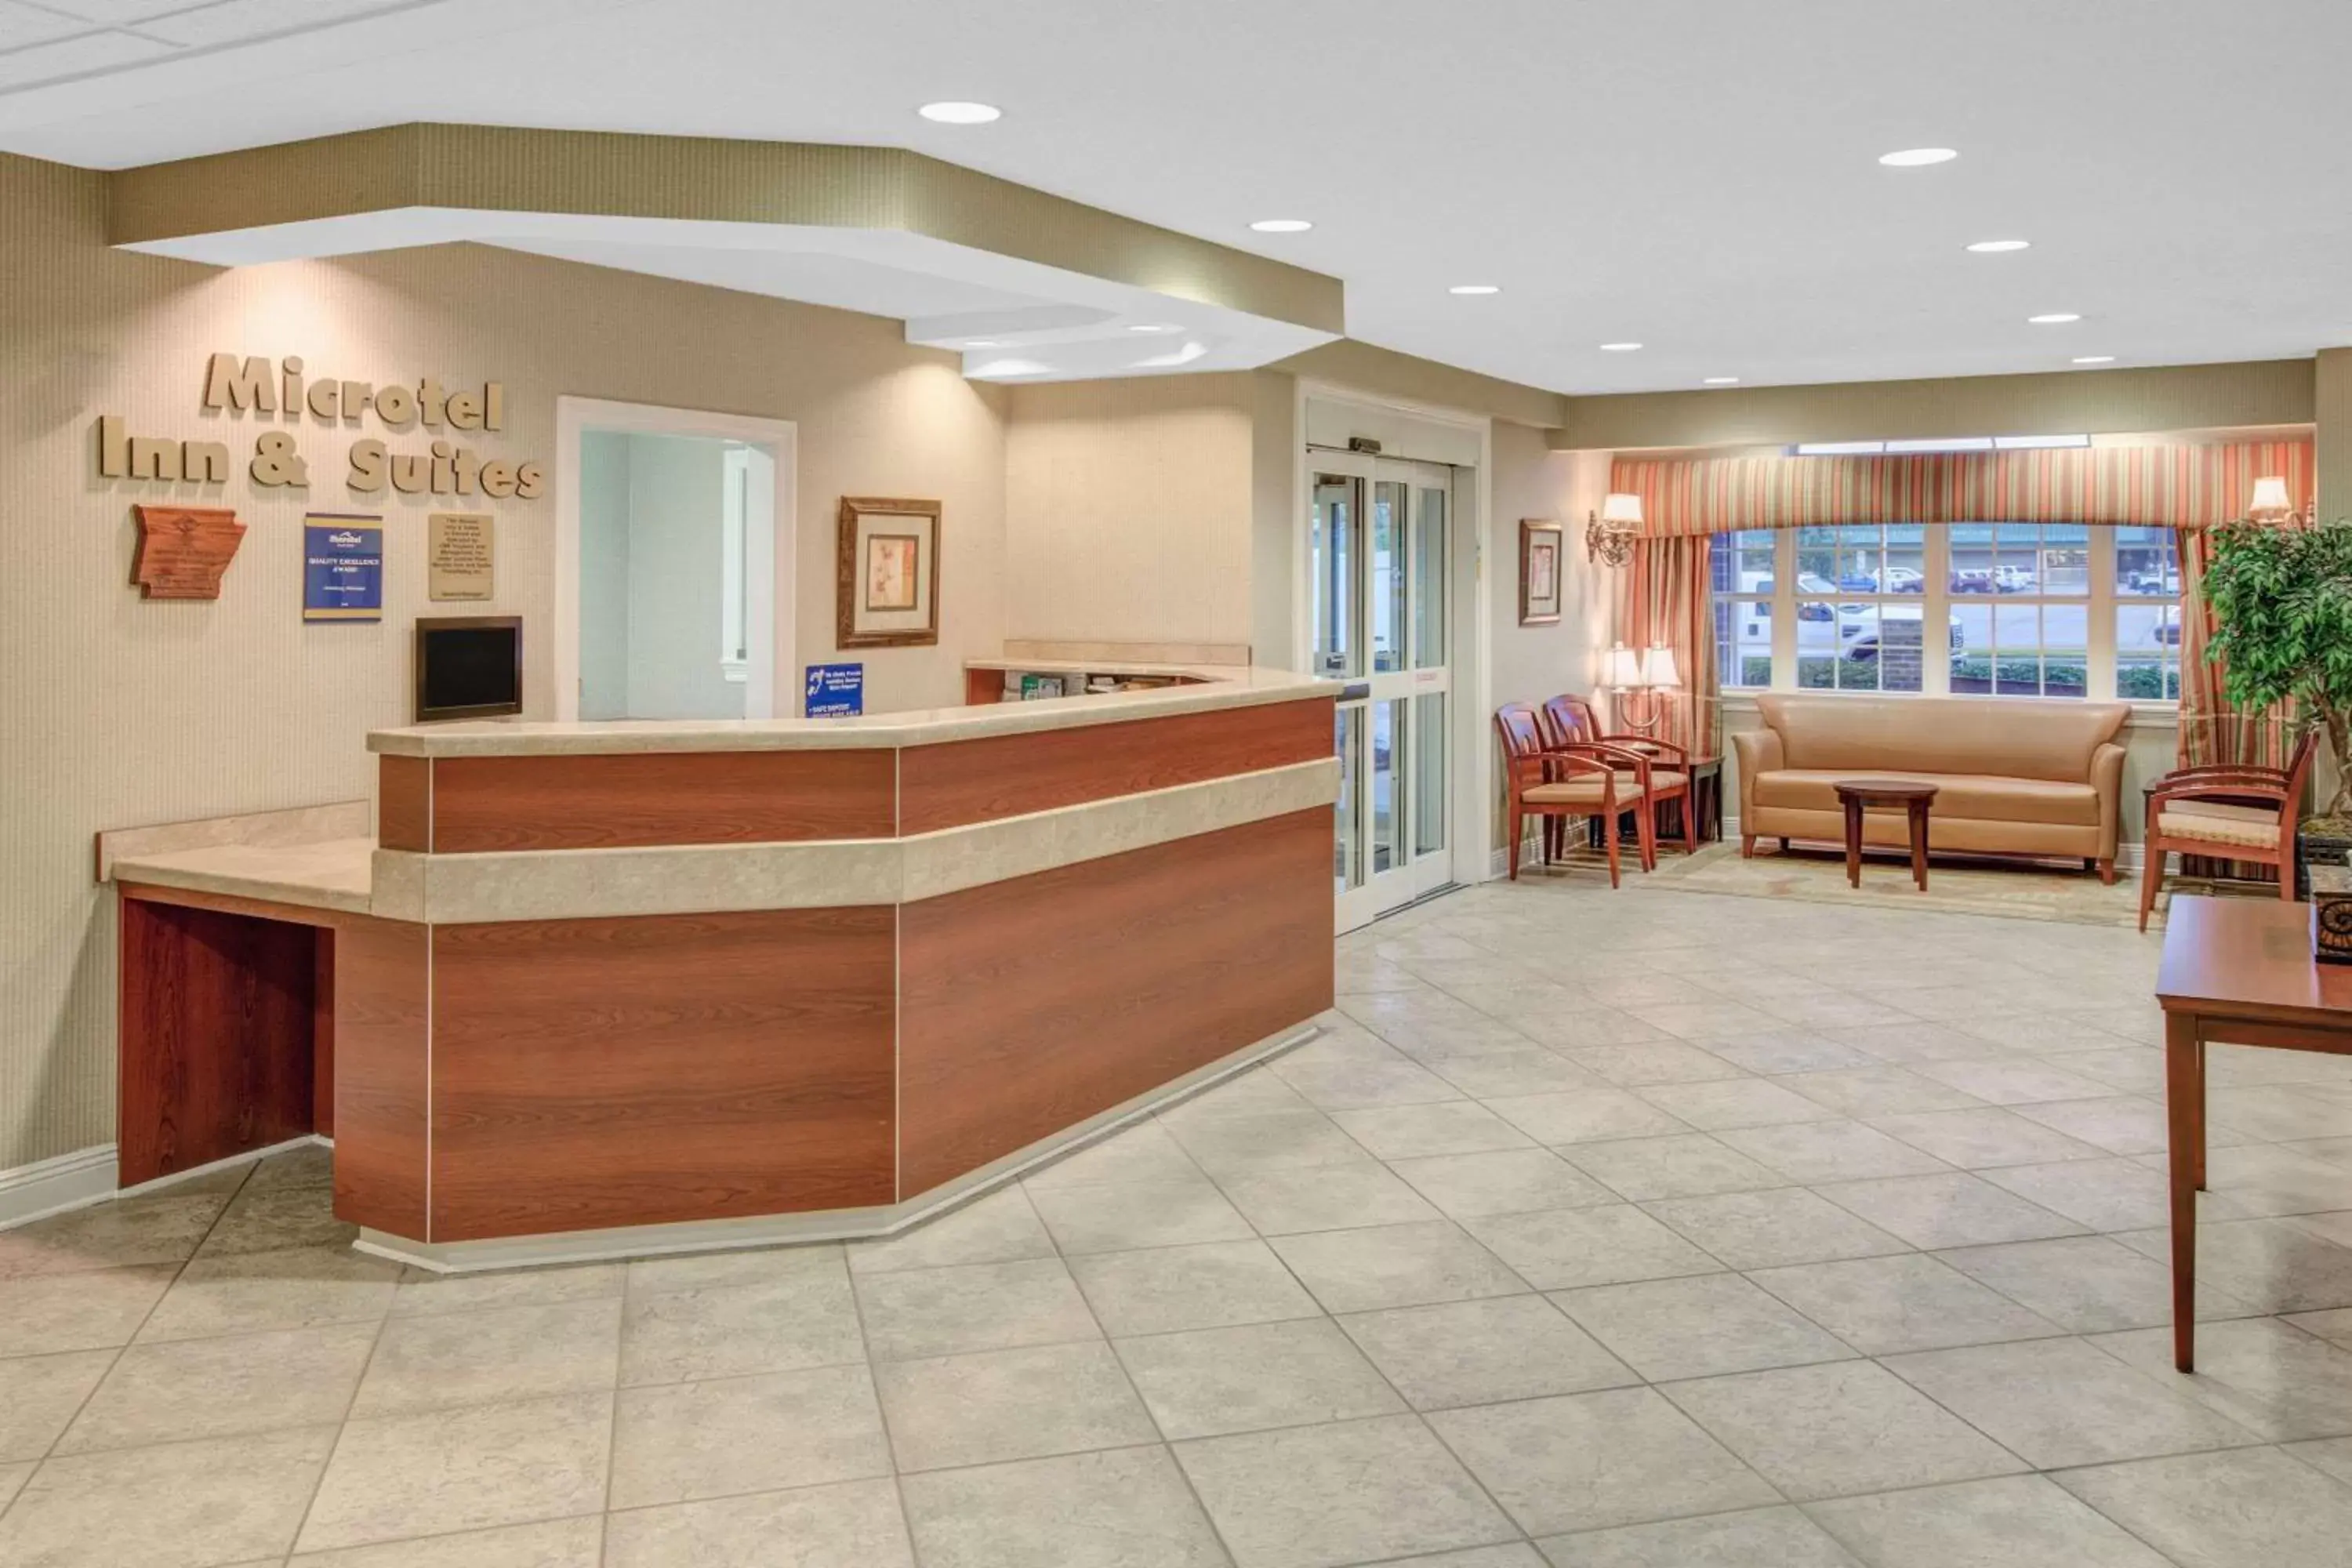 Lobby or reception, Lobby/Reception in Microtel Inn & Suites by Wyndham Hattiesburg